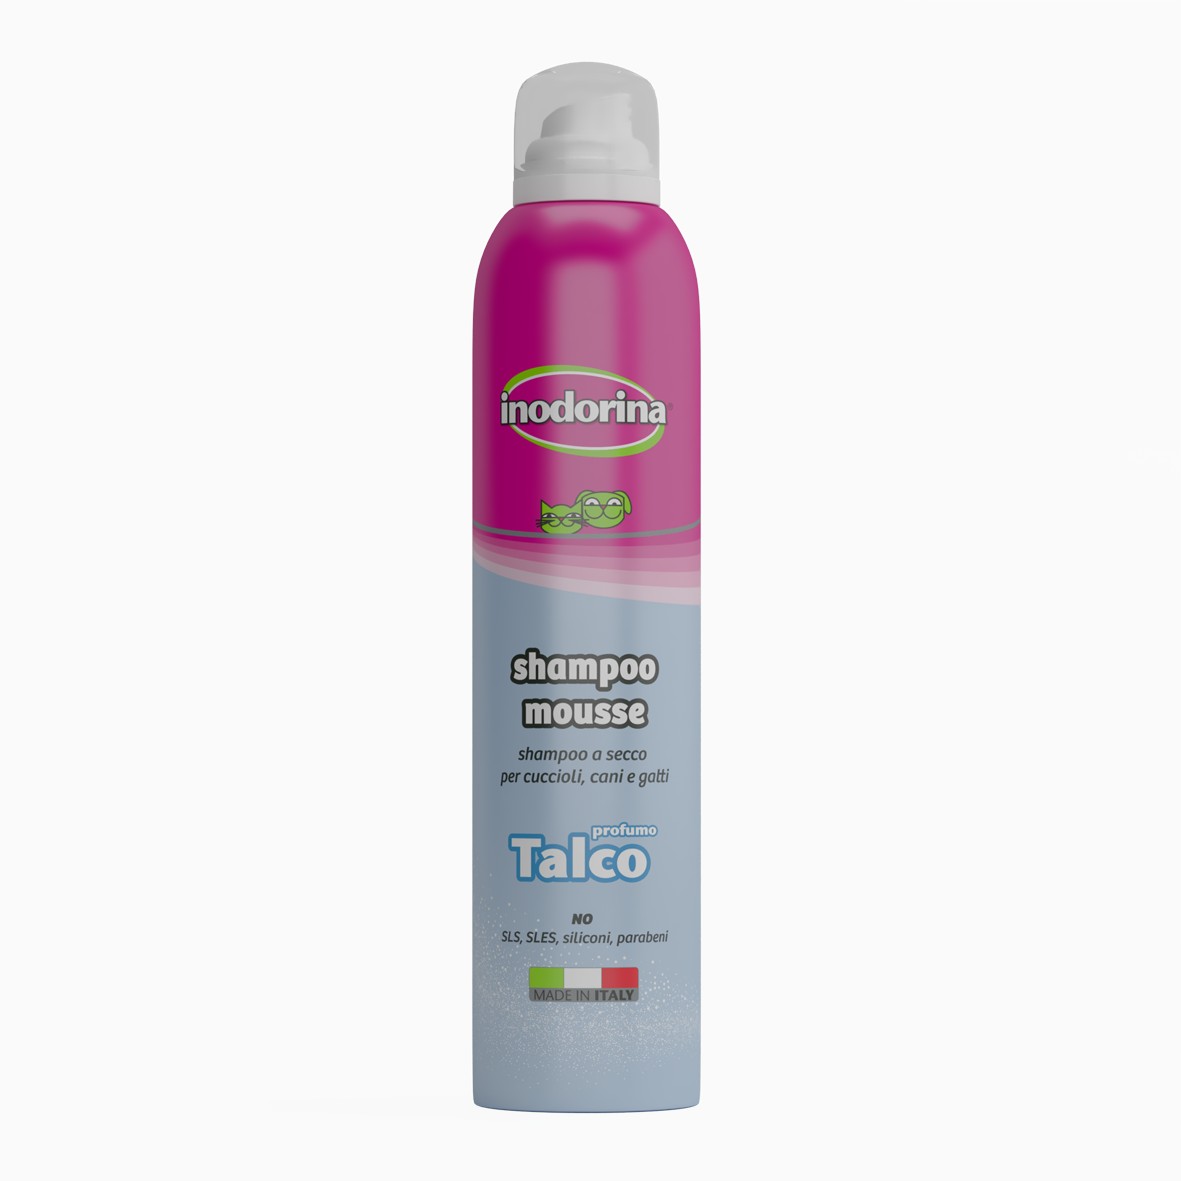 inodorina Shampoo Mousse - Talco 300 ml   Perro Inodorina